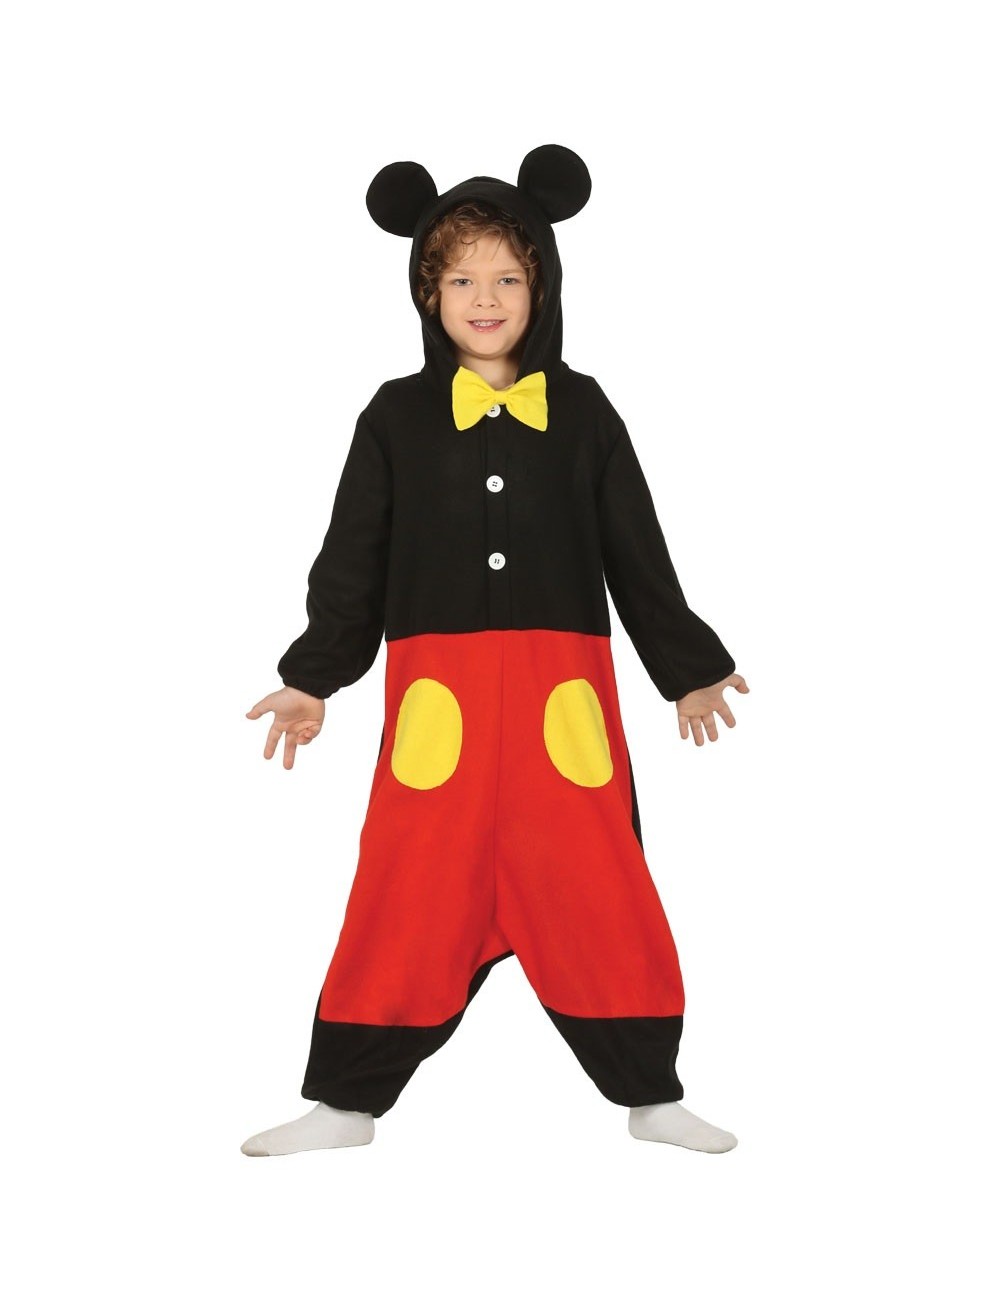 Costum pijama salopeta Little Mouse, copii 5-7 ani